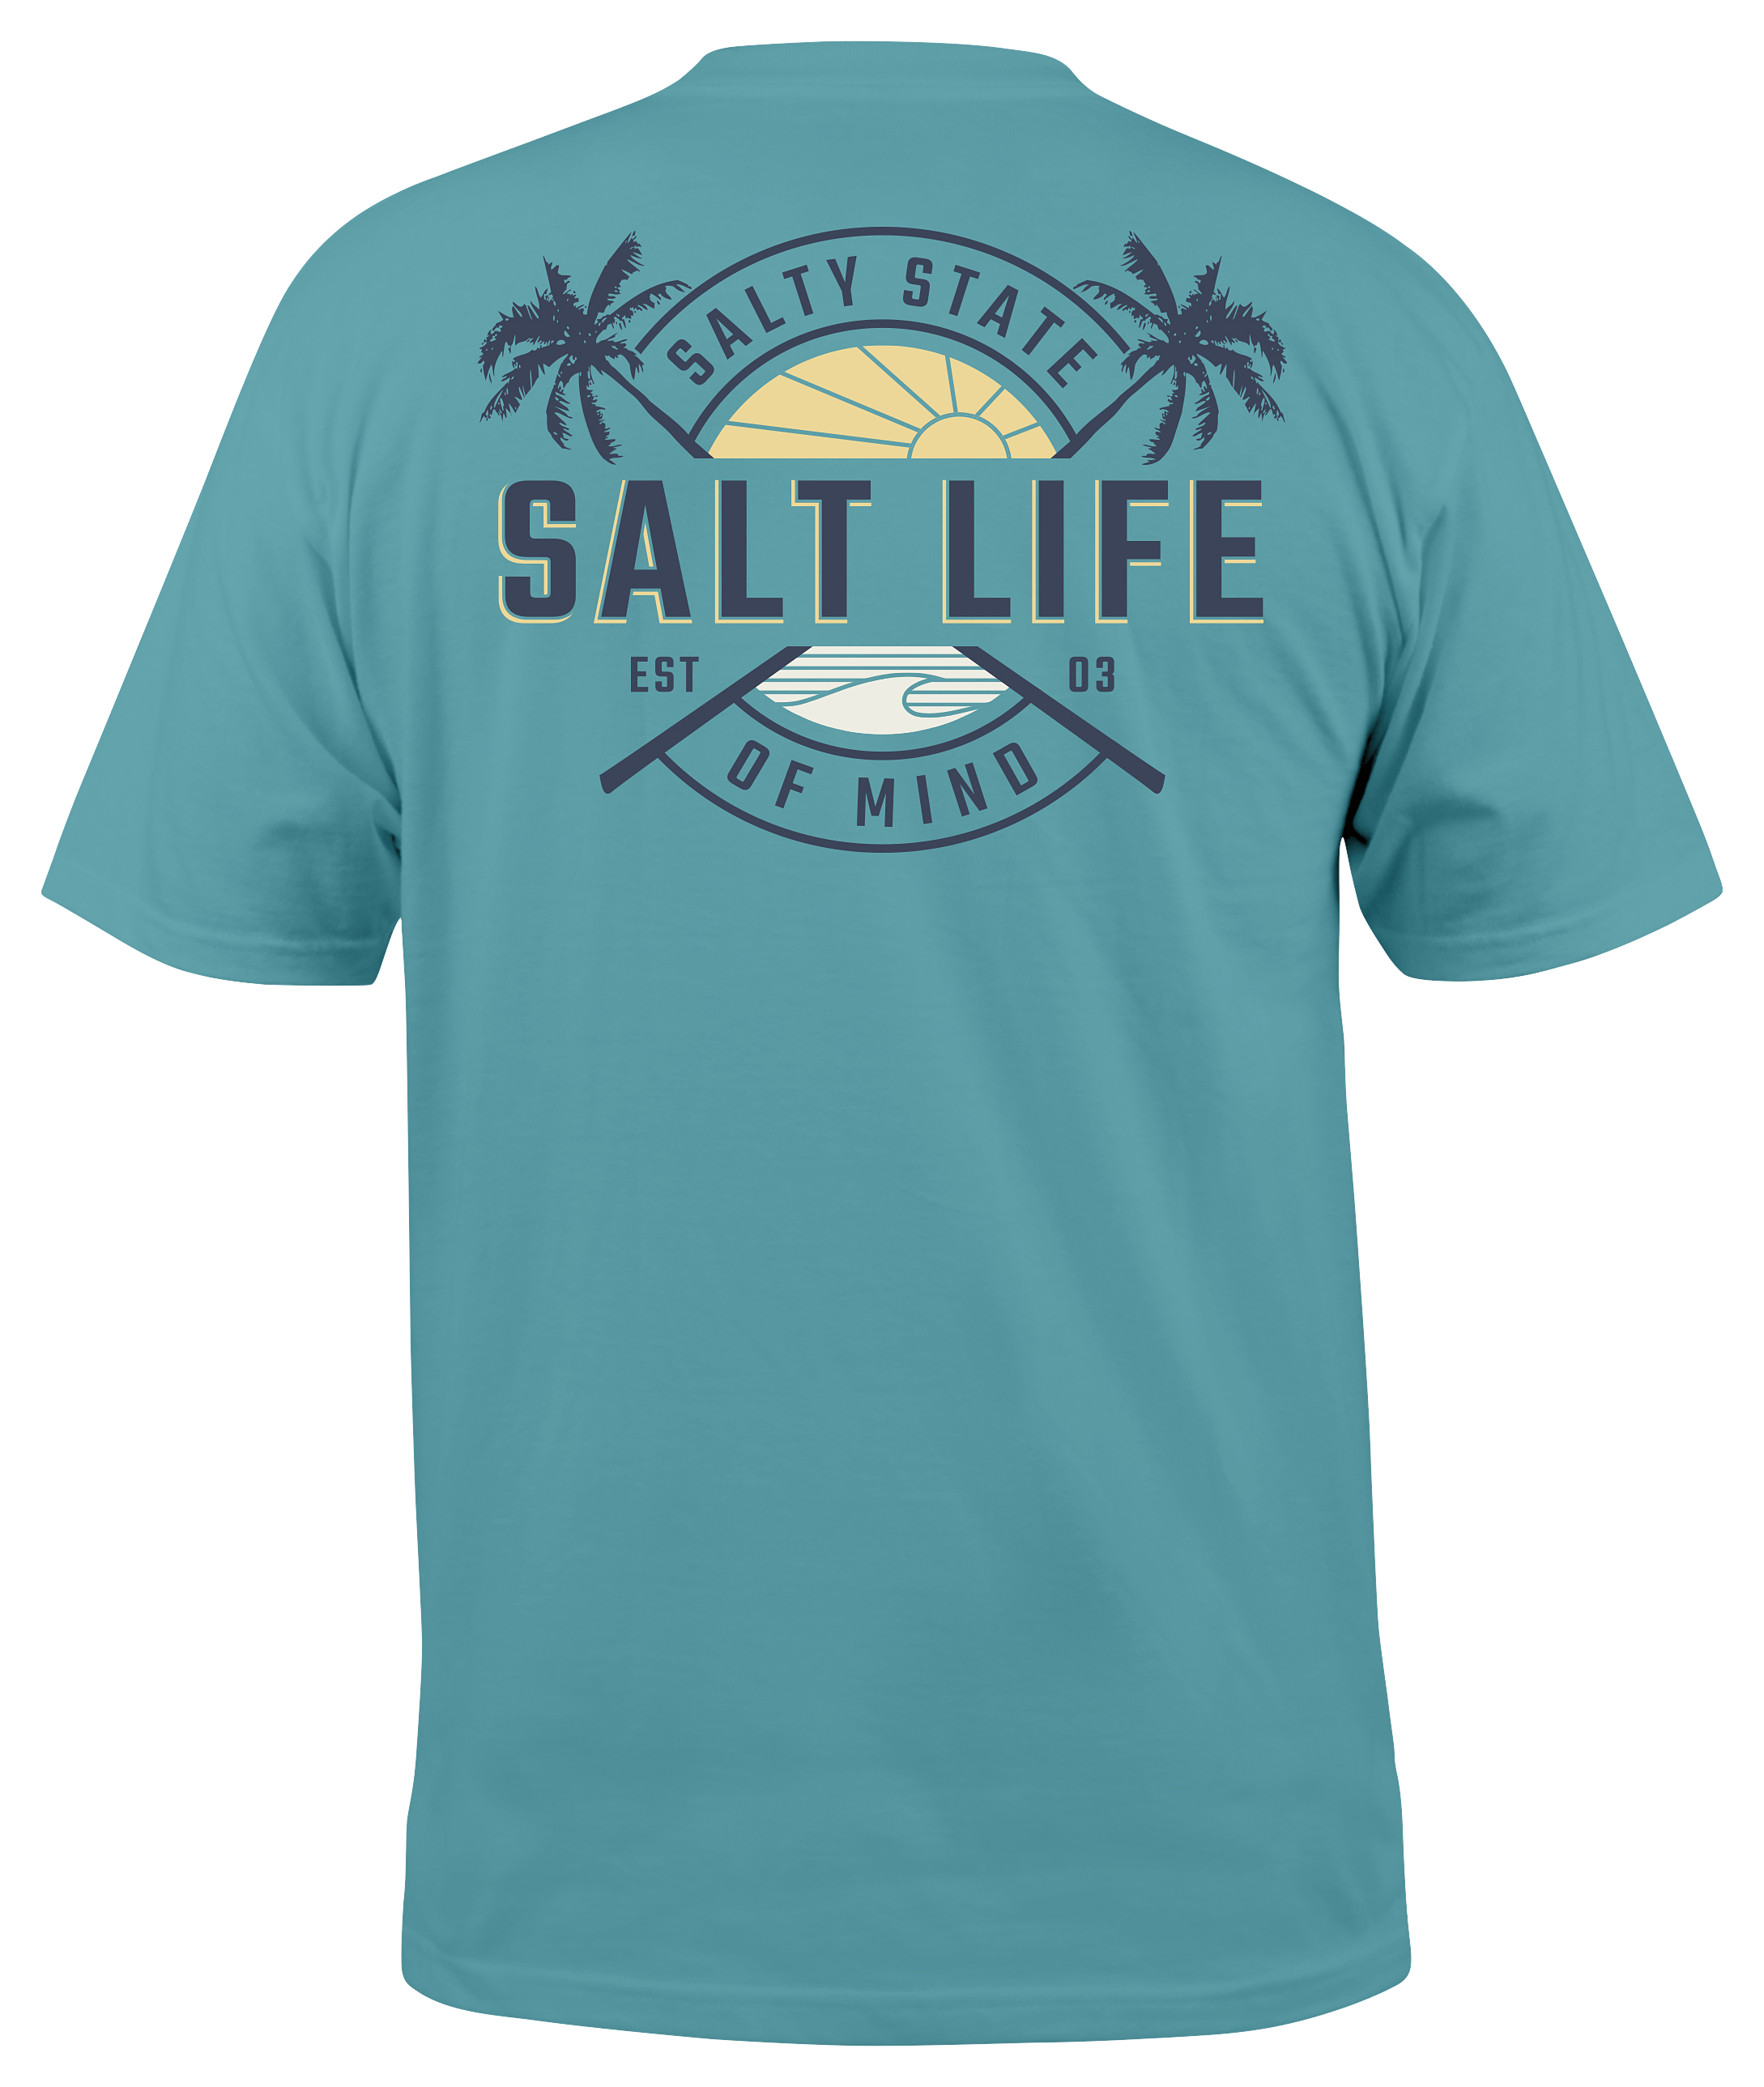 Salt Life Salty State of Mind Short-Sleeve Pocket T-Shirt for Men